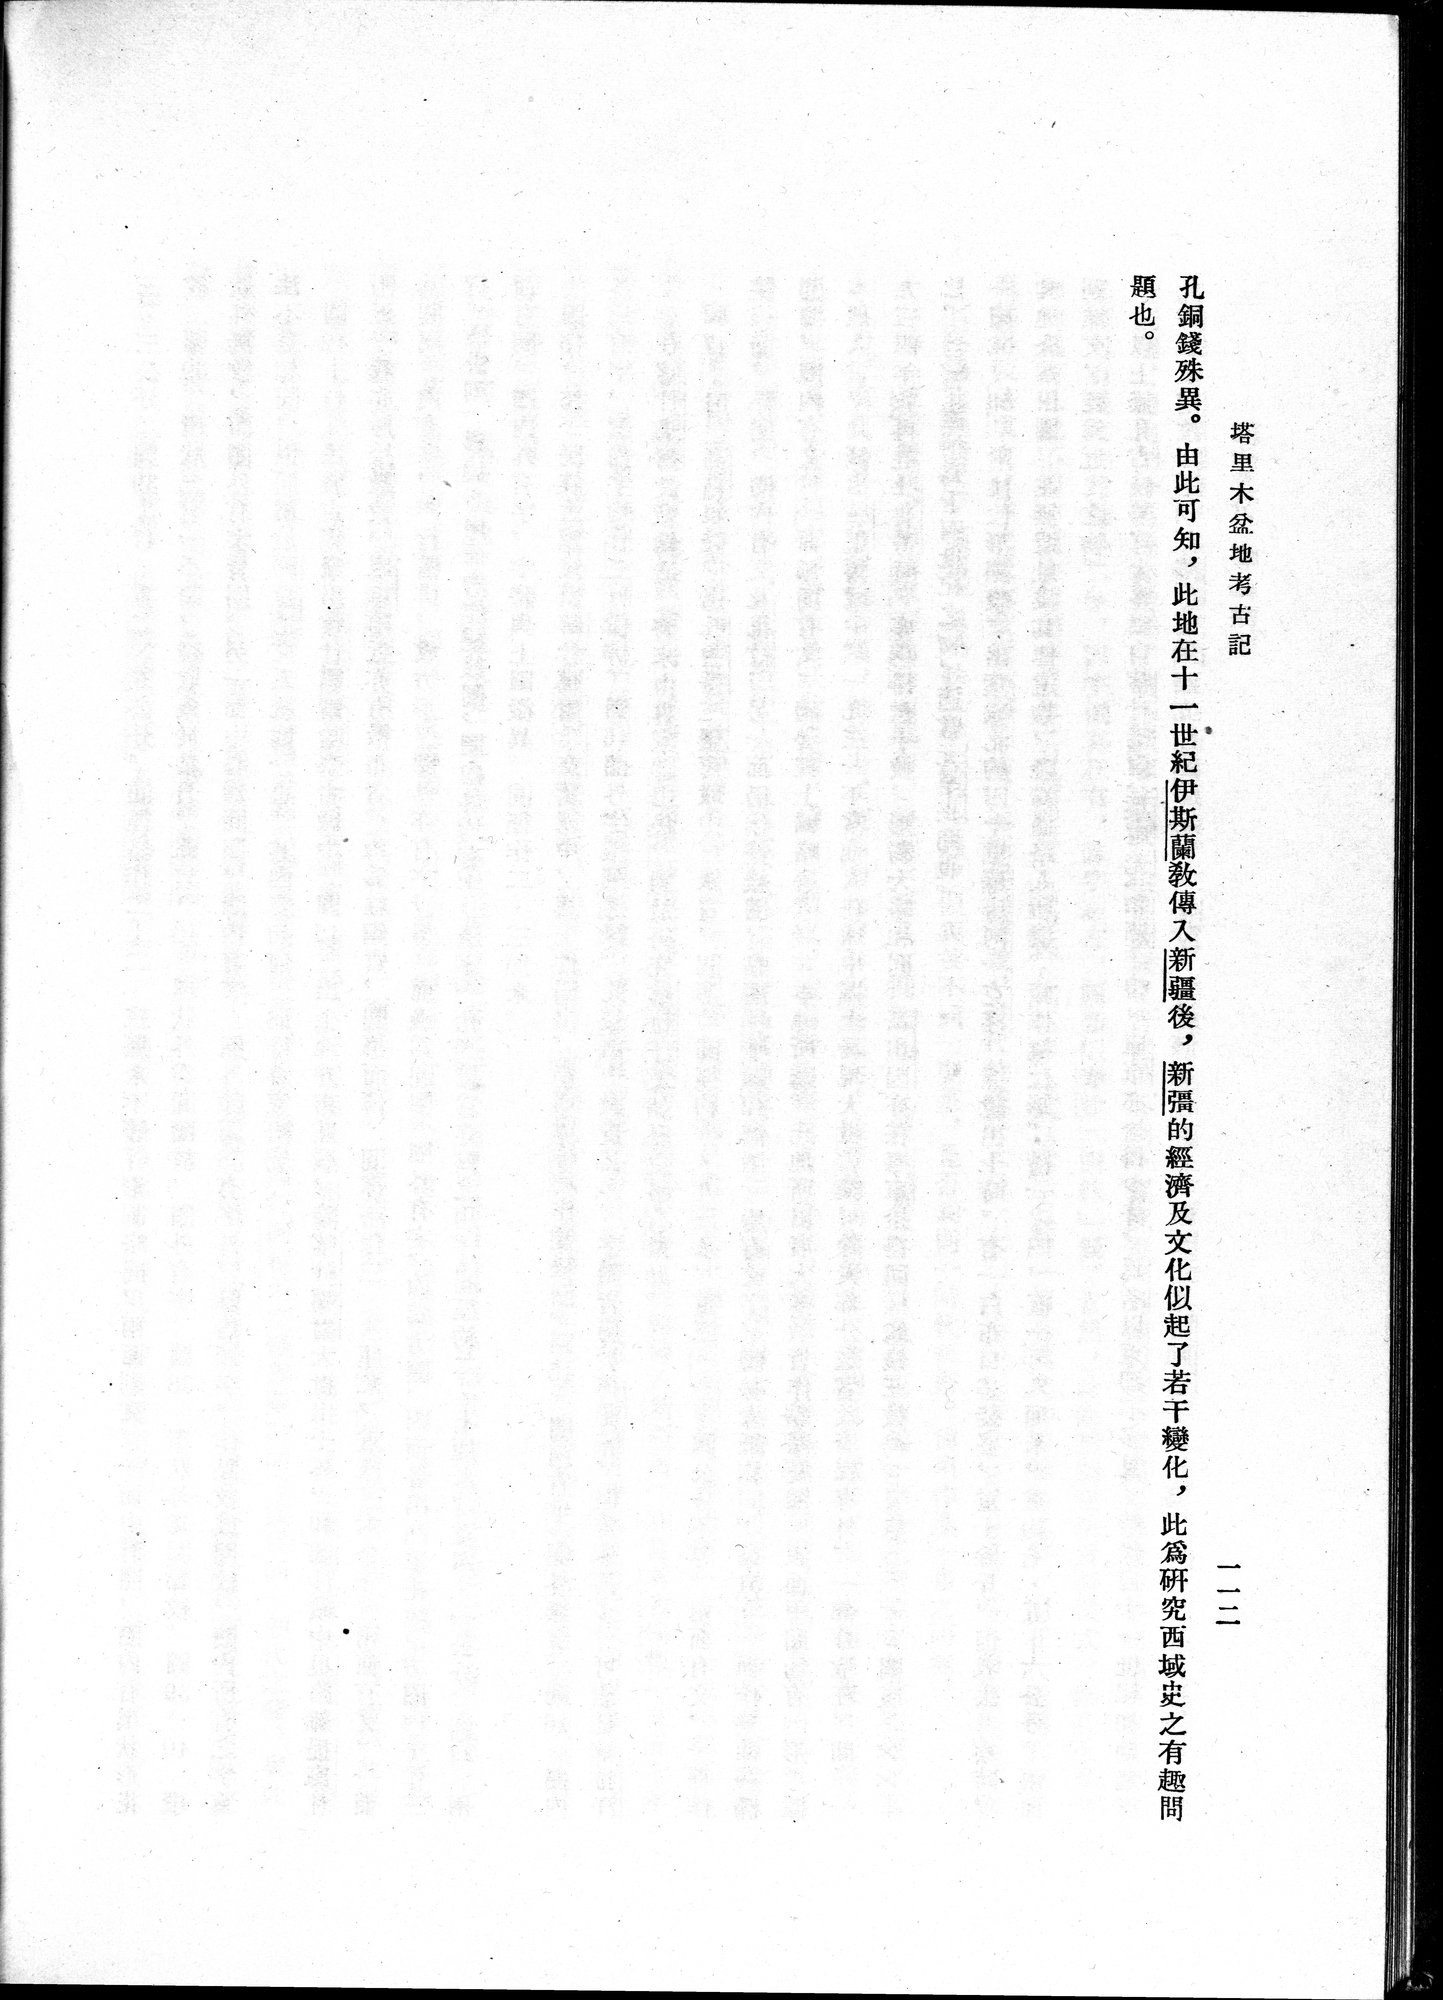 塔里木盆地考古記 : vol.1 / Page 176 (Grayscale High Resolution Image)